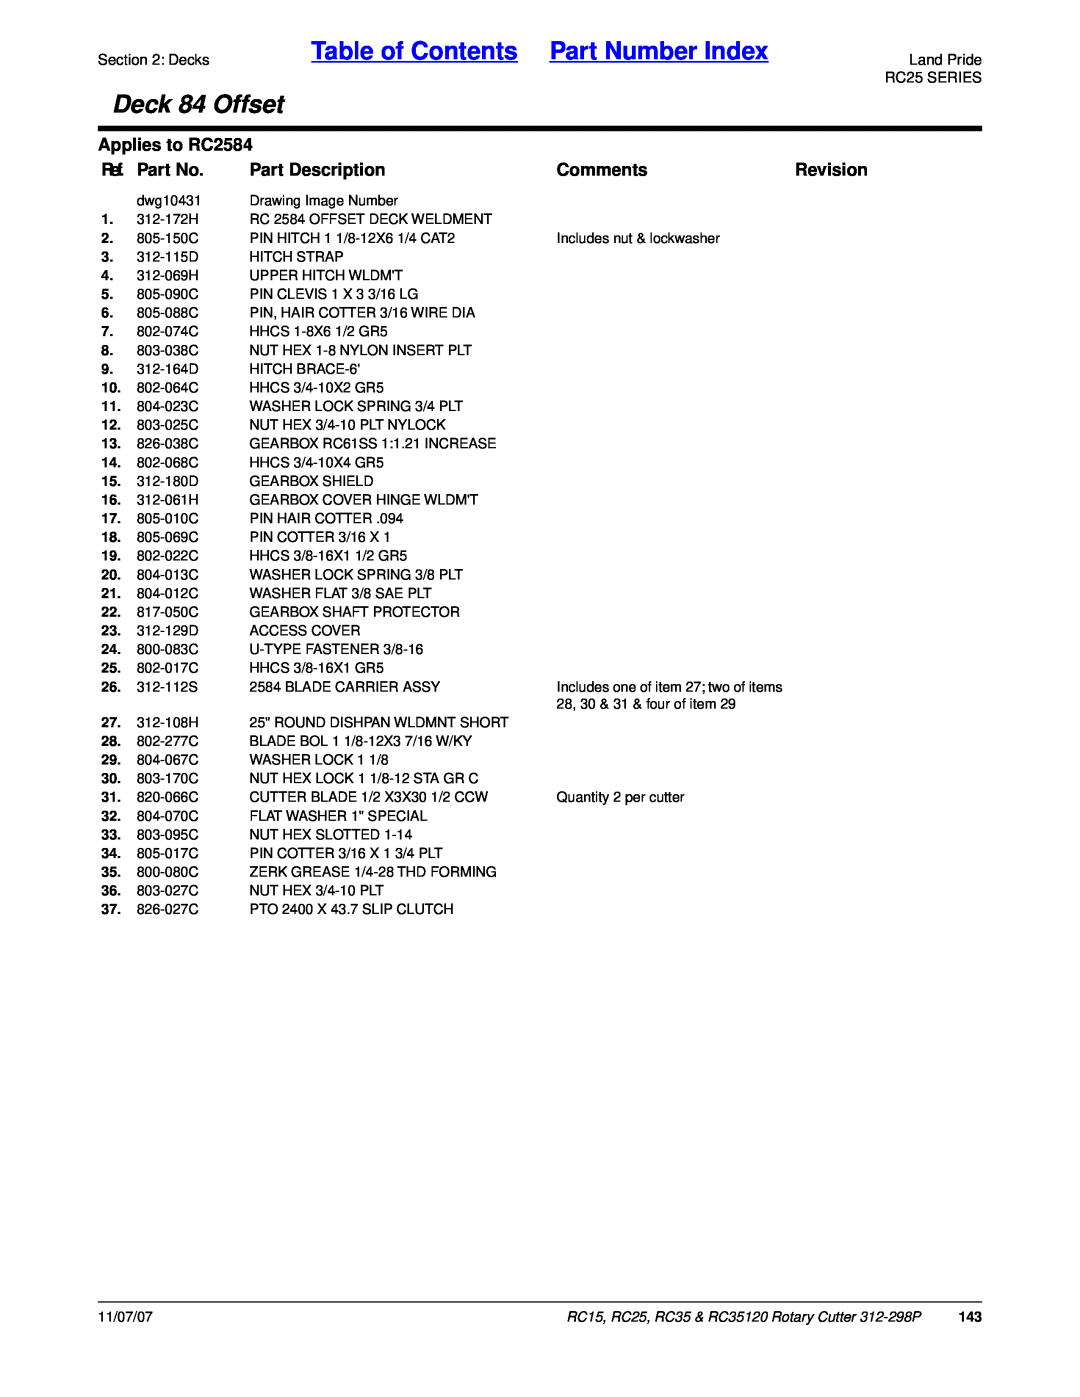 Land Pride RC15 Table of Contents Part Number Index, Deck 84 Offset, Applies to RC2584, Ref. Part No, Part Description 